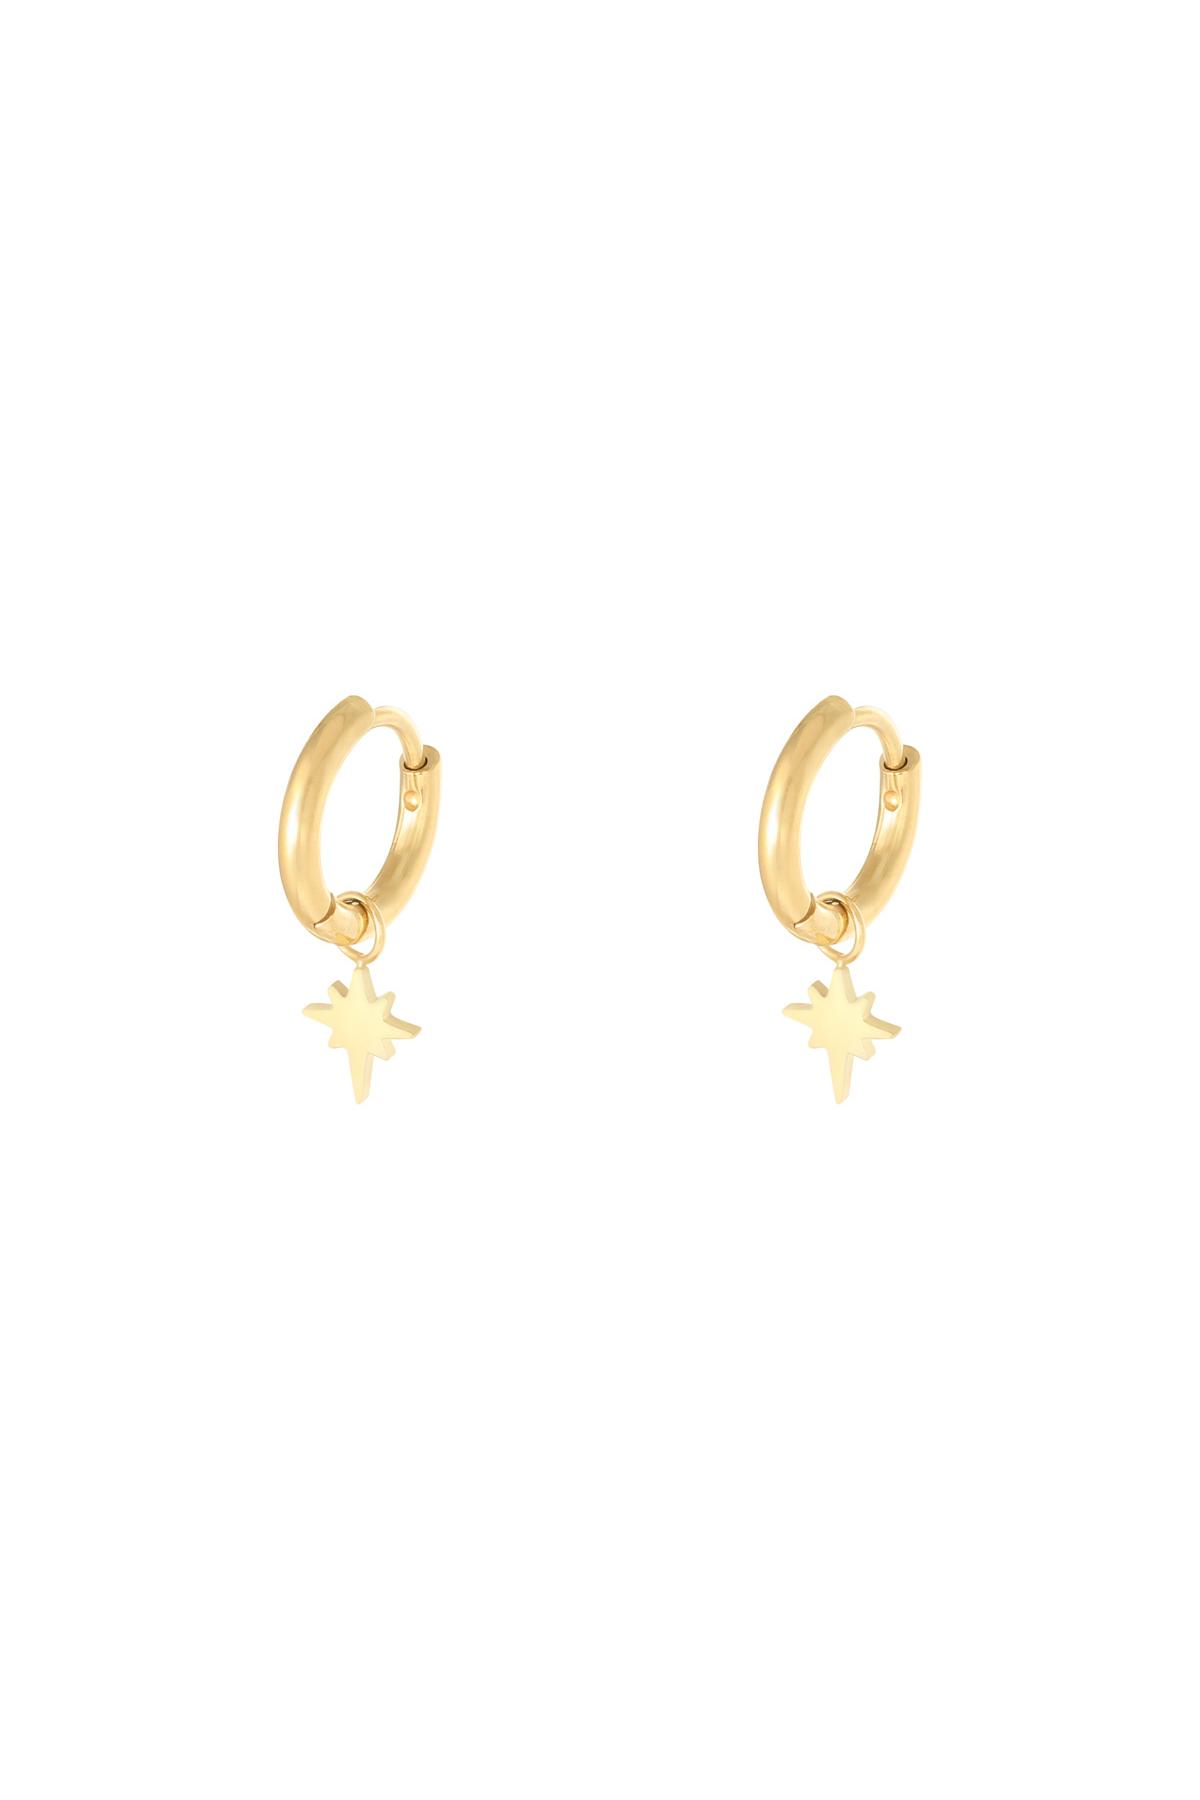 Earrings Spark Gold Stainless Steel 